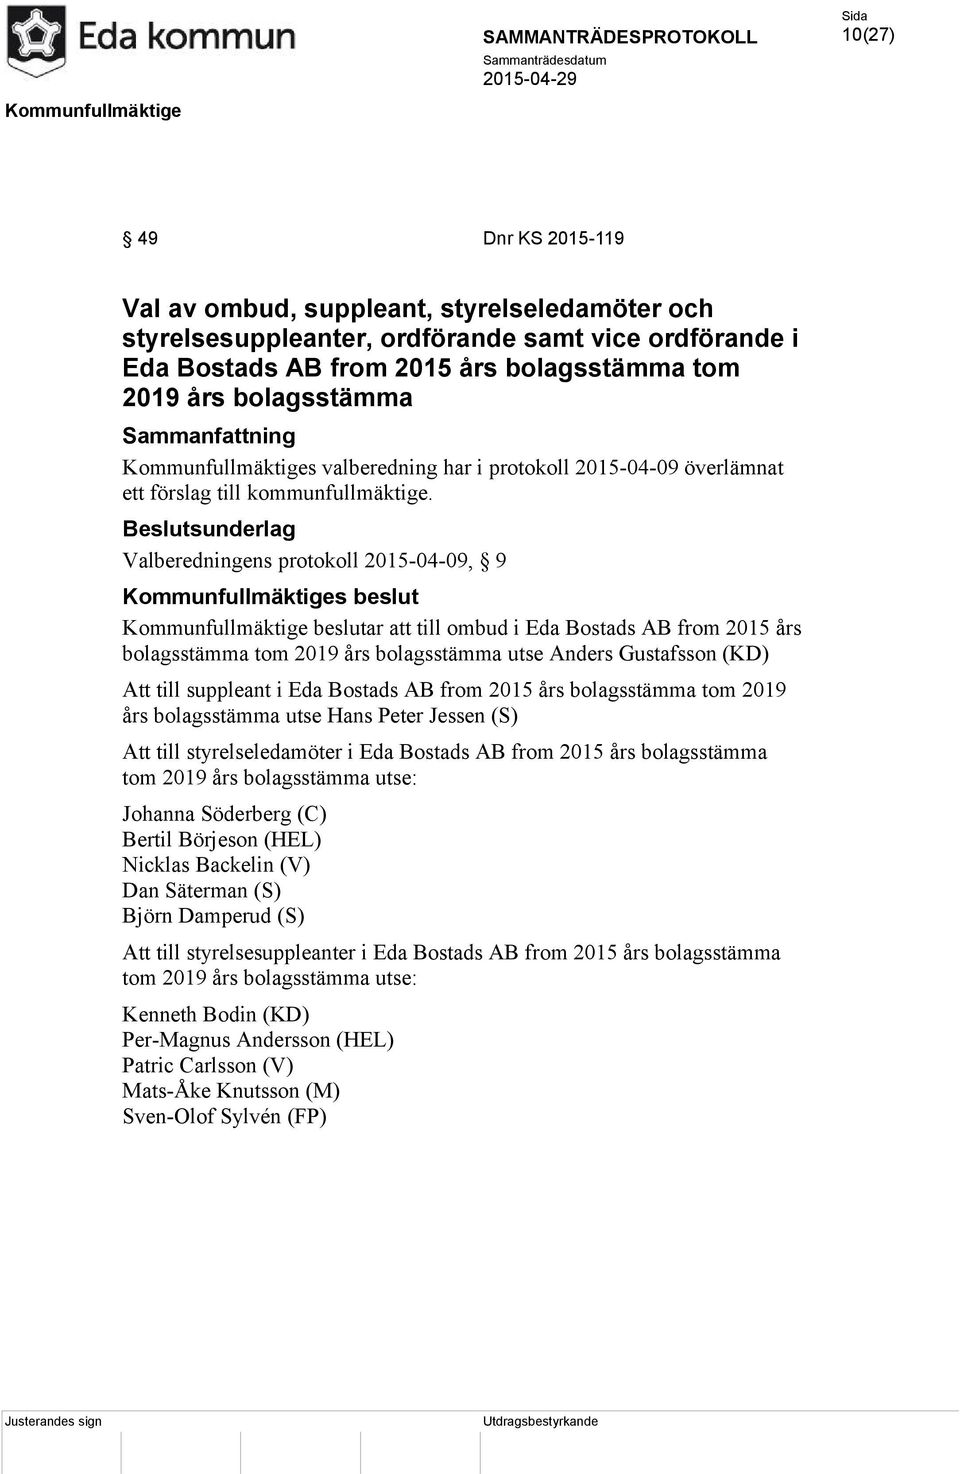 Valberedningens protokoll 2015-04-09, 9 Kommunfullmäktige beslutar att till ombud i Eda Bostads AB from 2015 års bolagsstämma tom 2019 års bolagsstämma utse Anders Gustafsson (KD) Att till suppleant